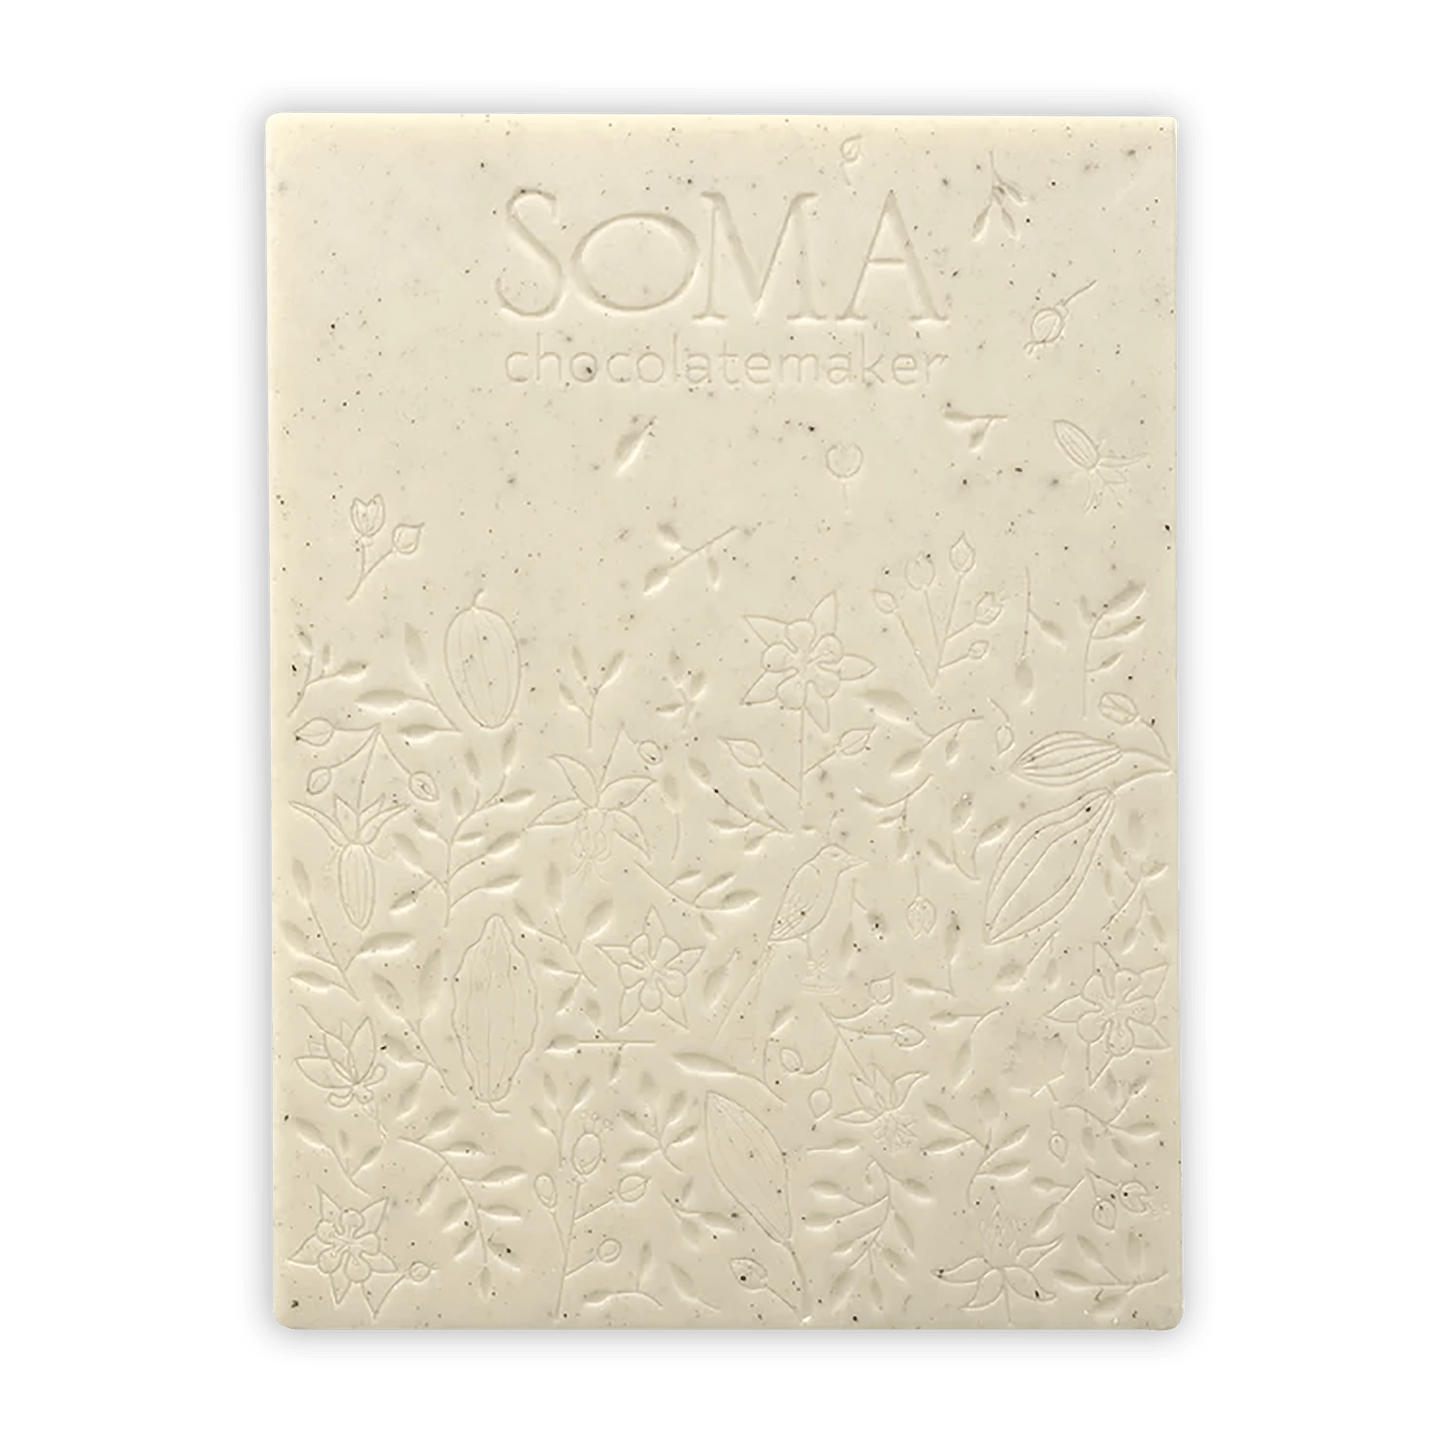 Soma Pompona Vanilla White Chocolate